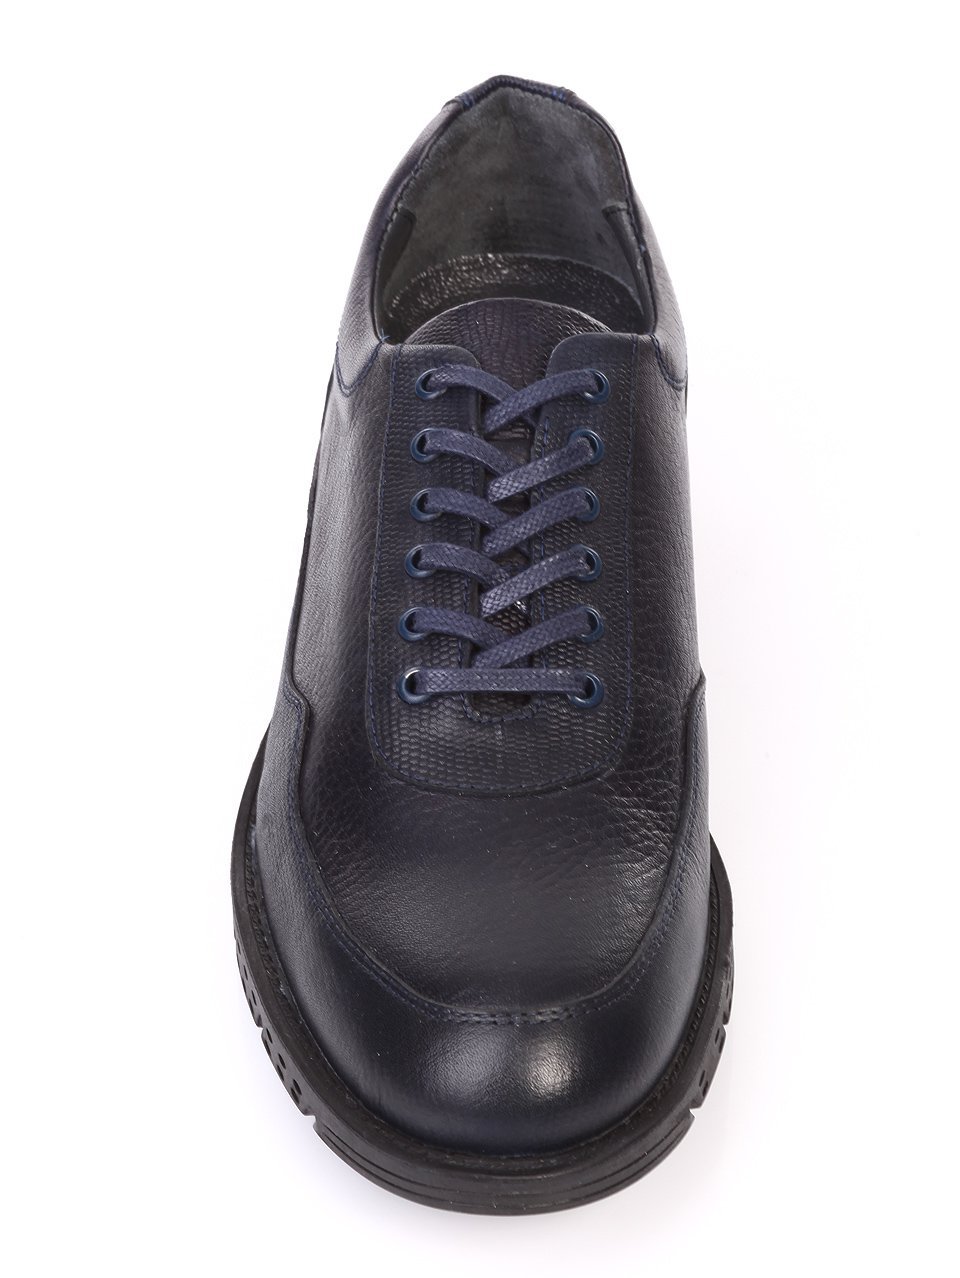 Ежедневни мъжки обувки от естествена кожа в синьо 619-207 navy